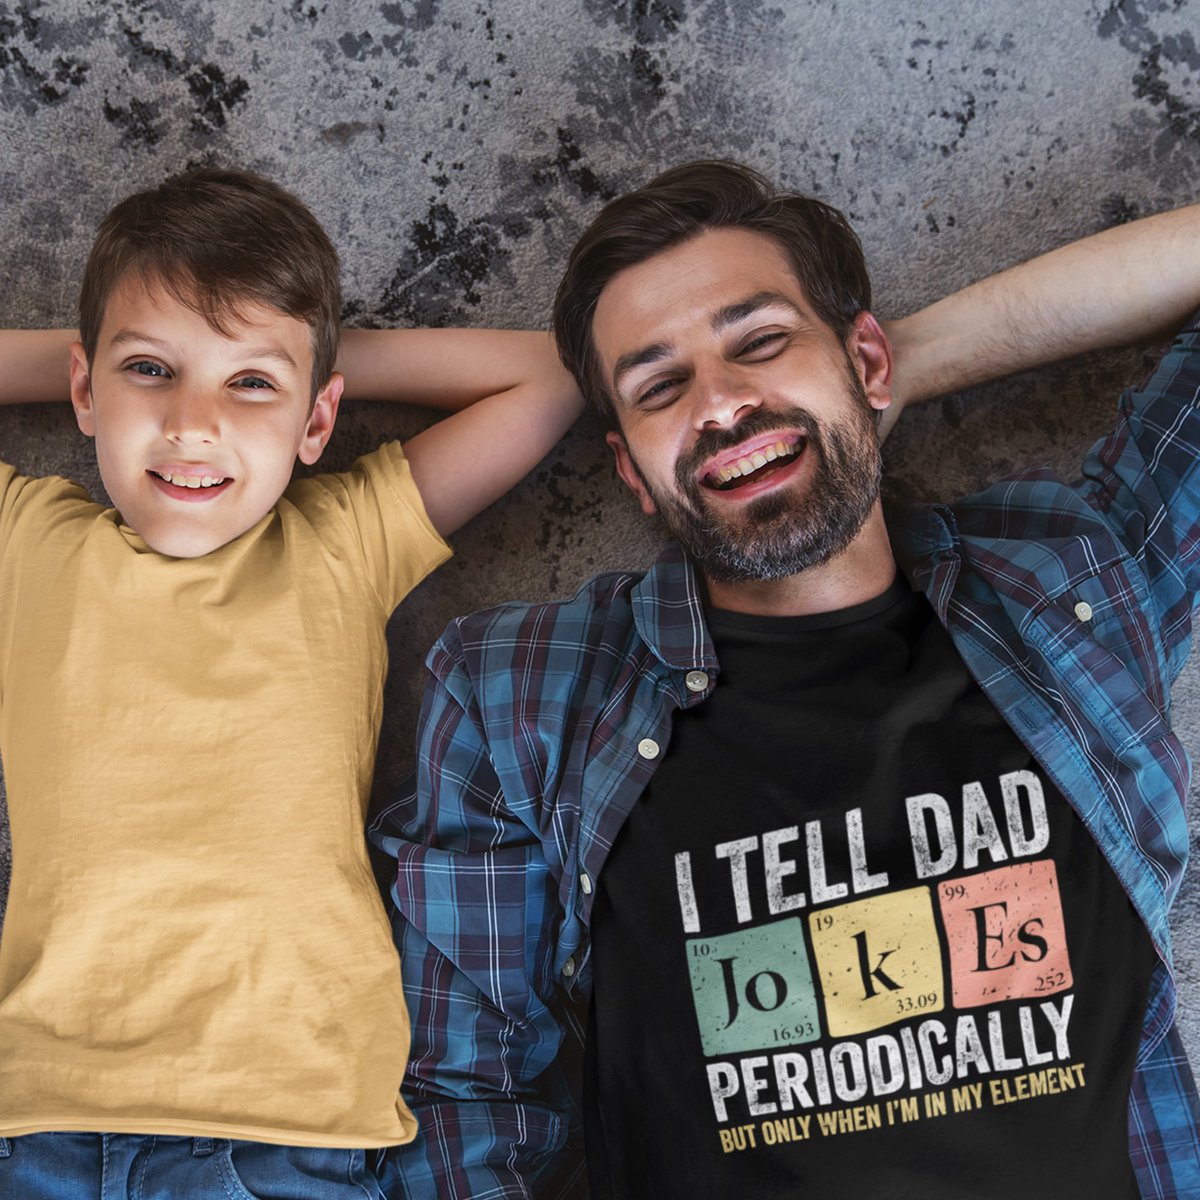 Dad jokes periodic table Father’s Day  T-Shirt zazzle.com/z/asqnsgr5?rf=… via @zazzle
#fathersday #fathersdaygift #dadjokes #periodictable #dad #zazzlemade